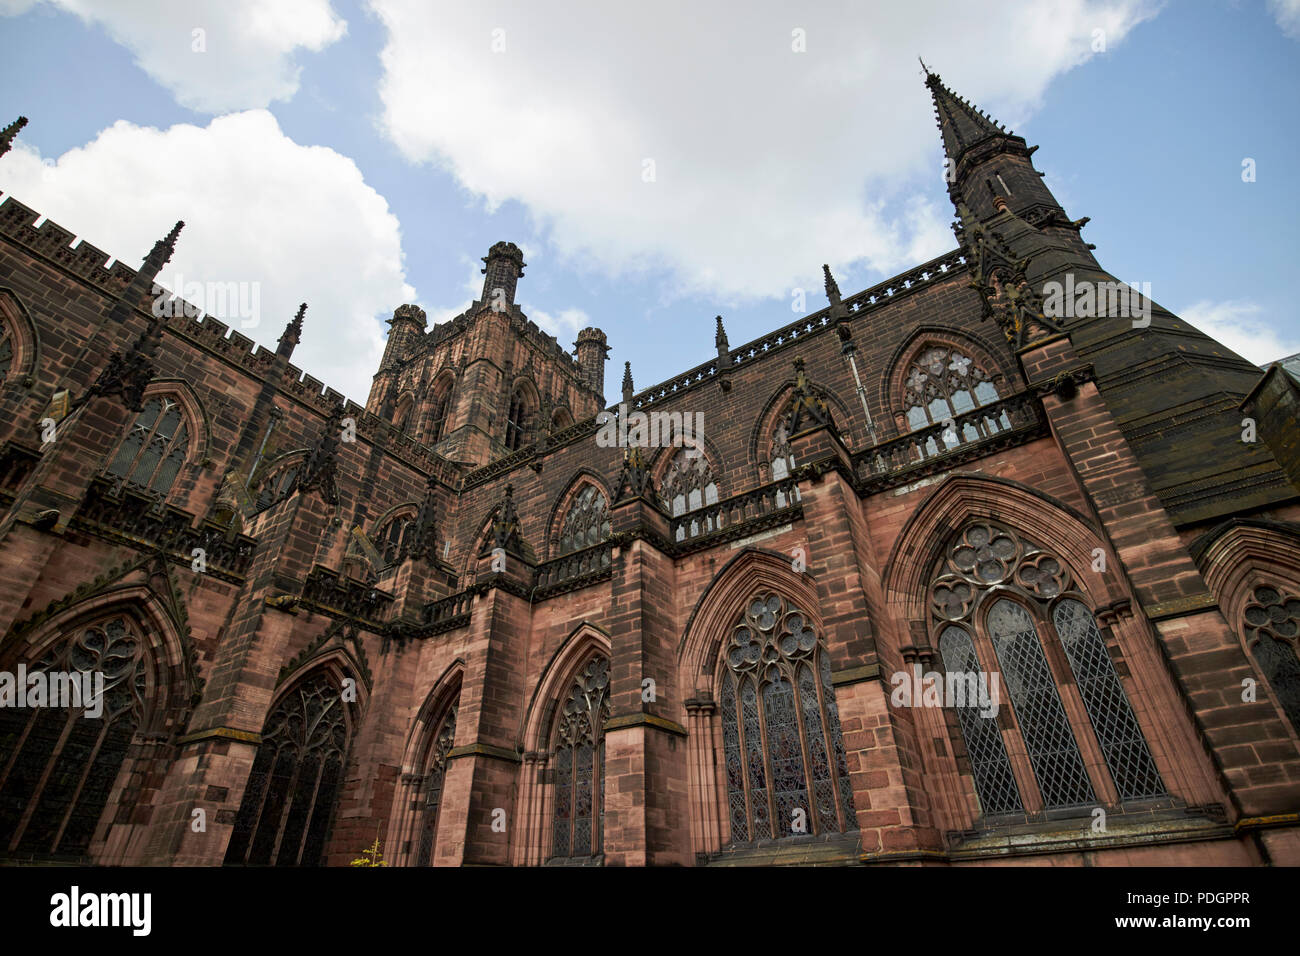 Cathédrale de l'Église du Christ et de la bienheureuse Vierge Marie de la cathédrale de Chester chester cheshire england uk Banque D'Images